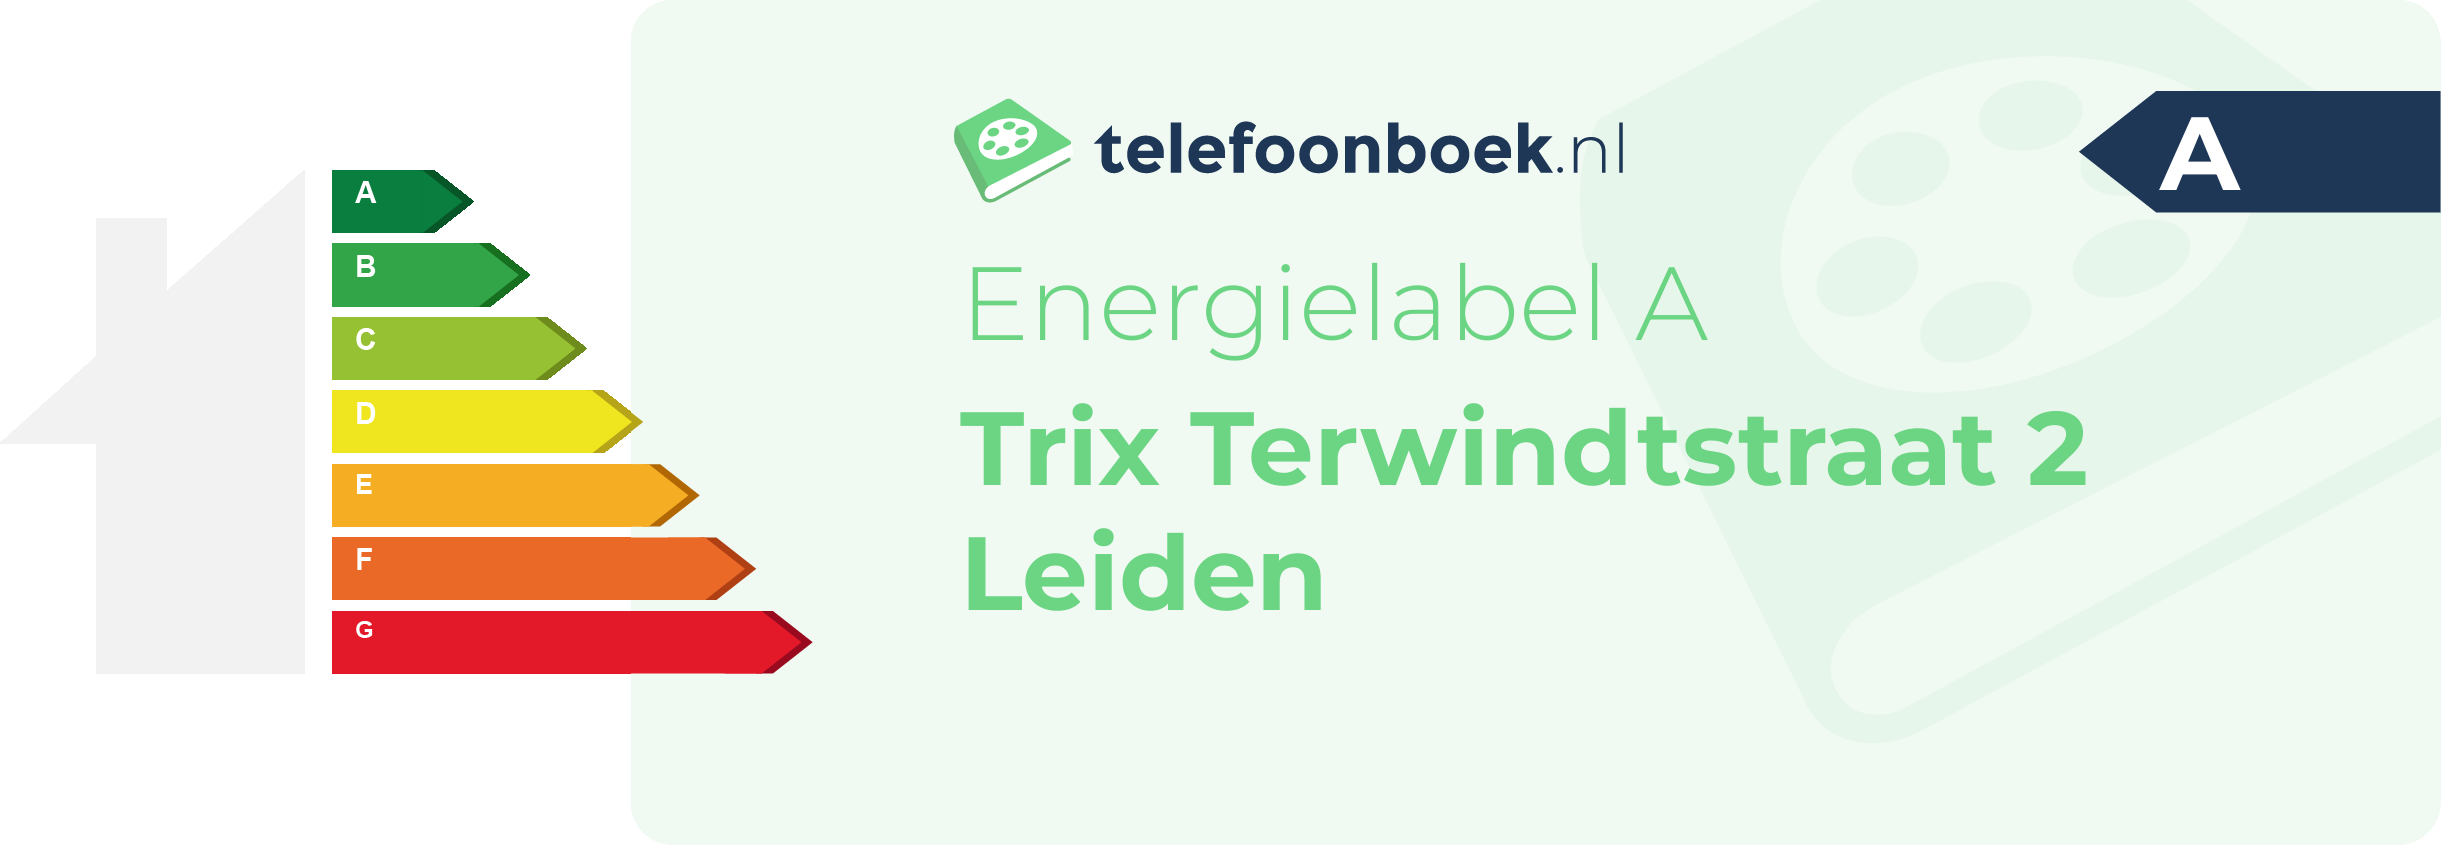 Energielabel Trix Terwindtstraat 2 Leiden